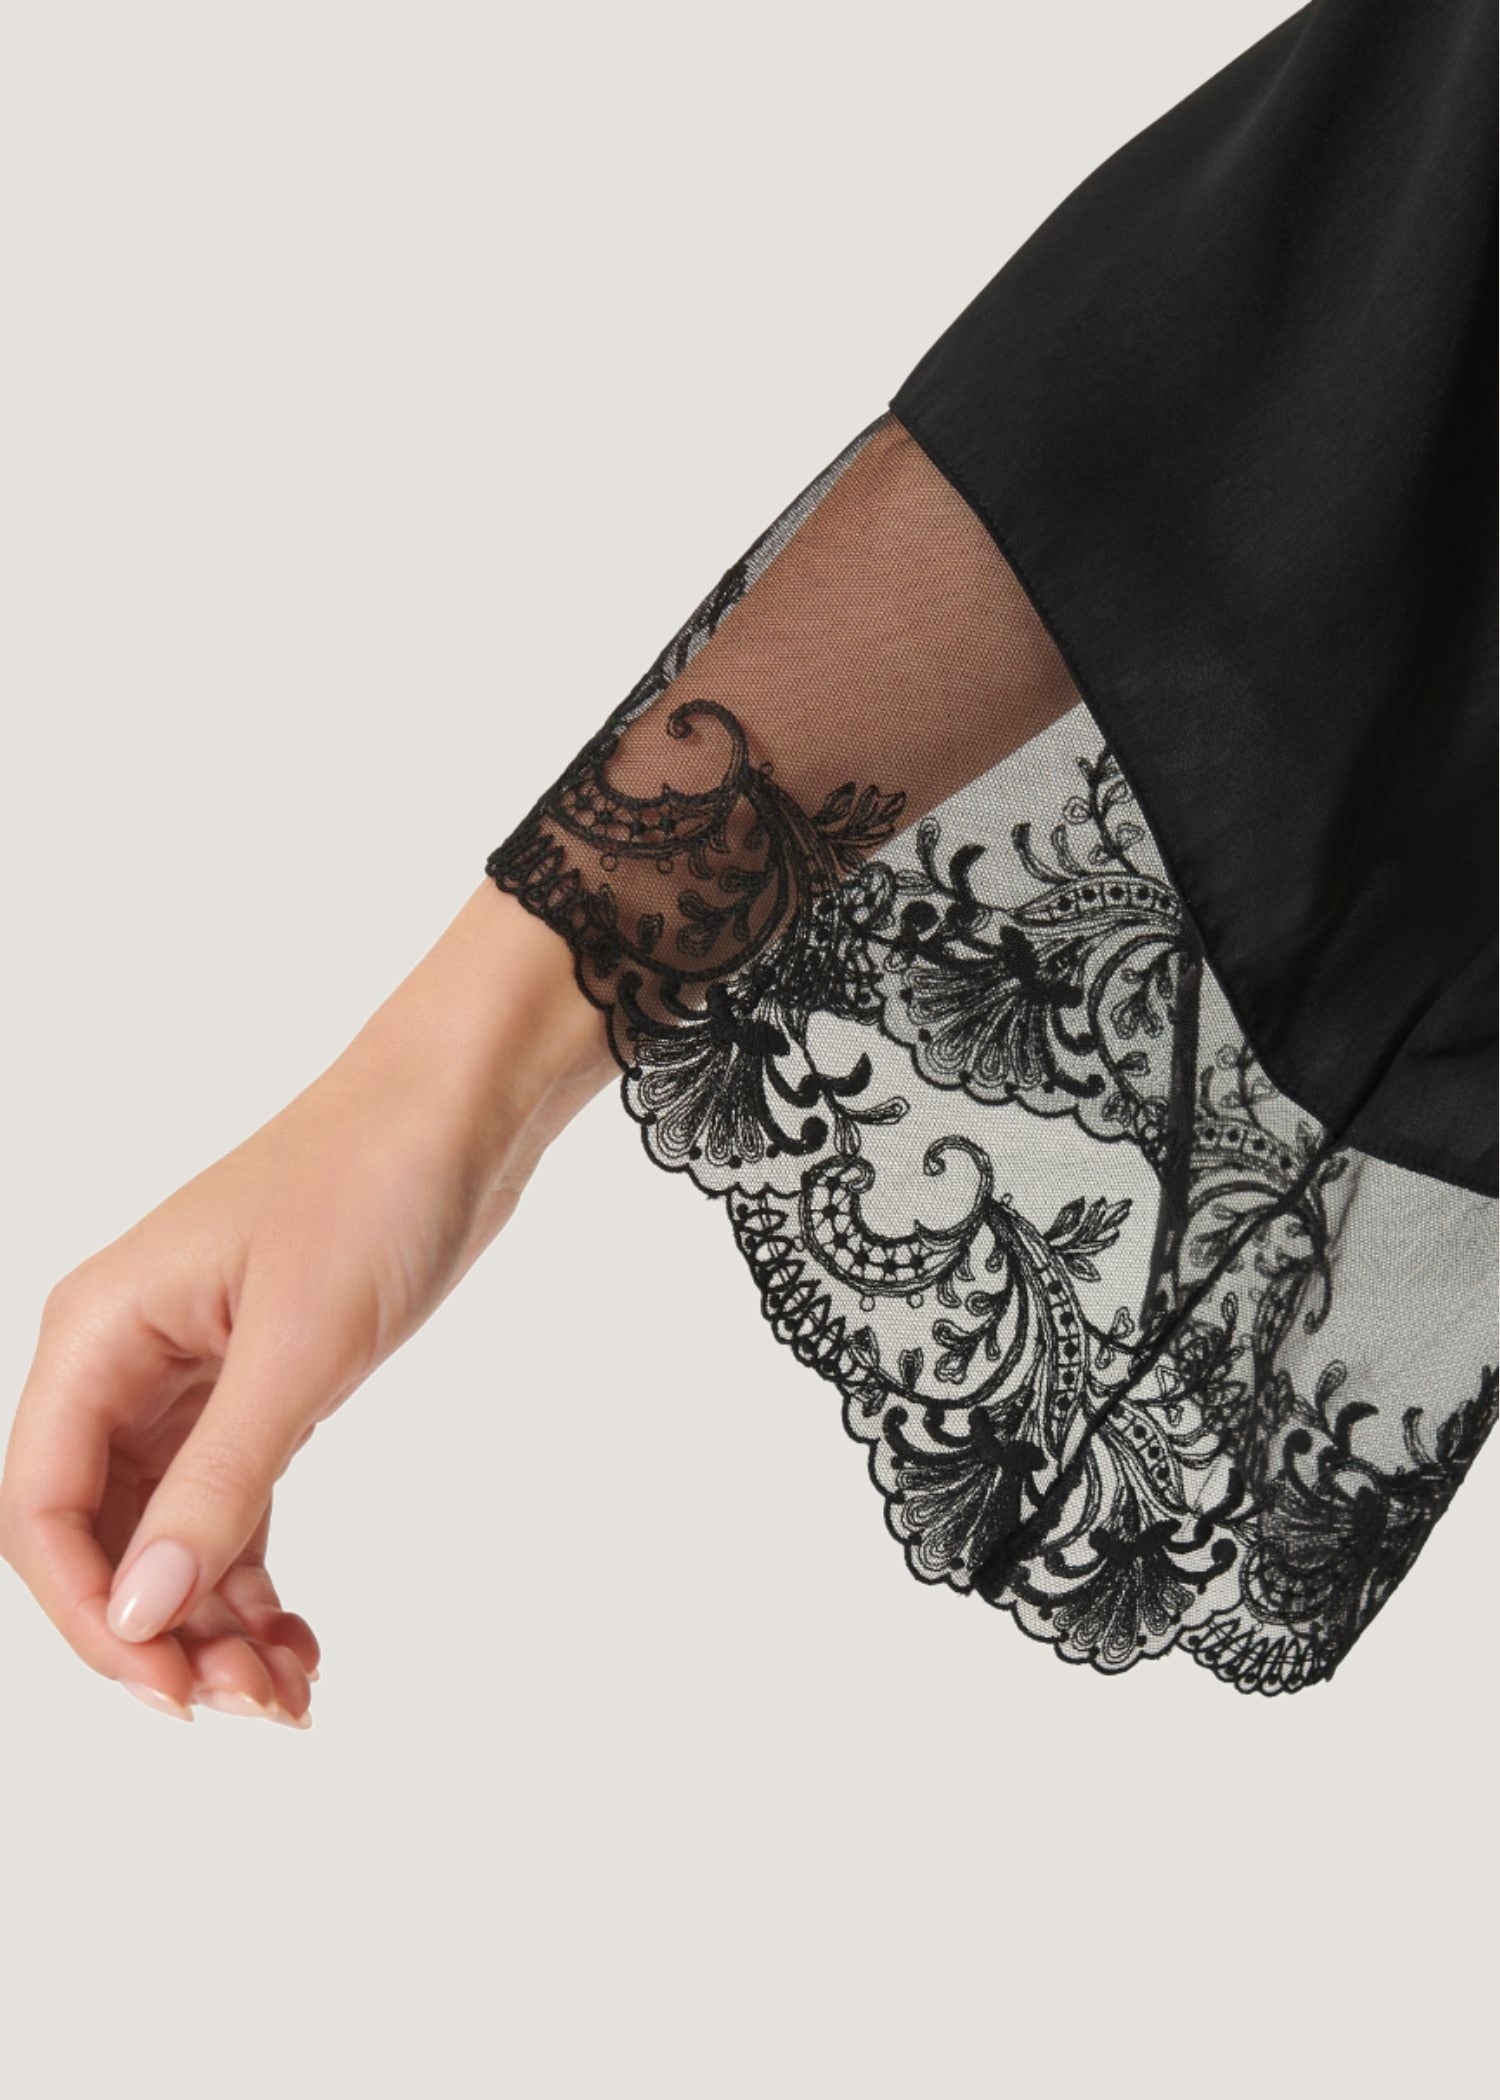 Marseielle Luxury Satin Kimono (Black) | Avec Amour Lingerie